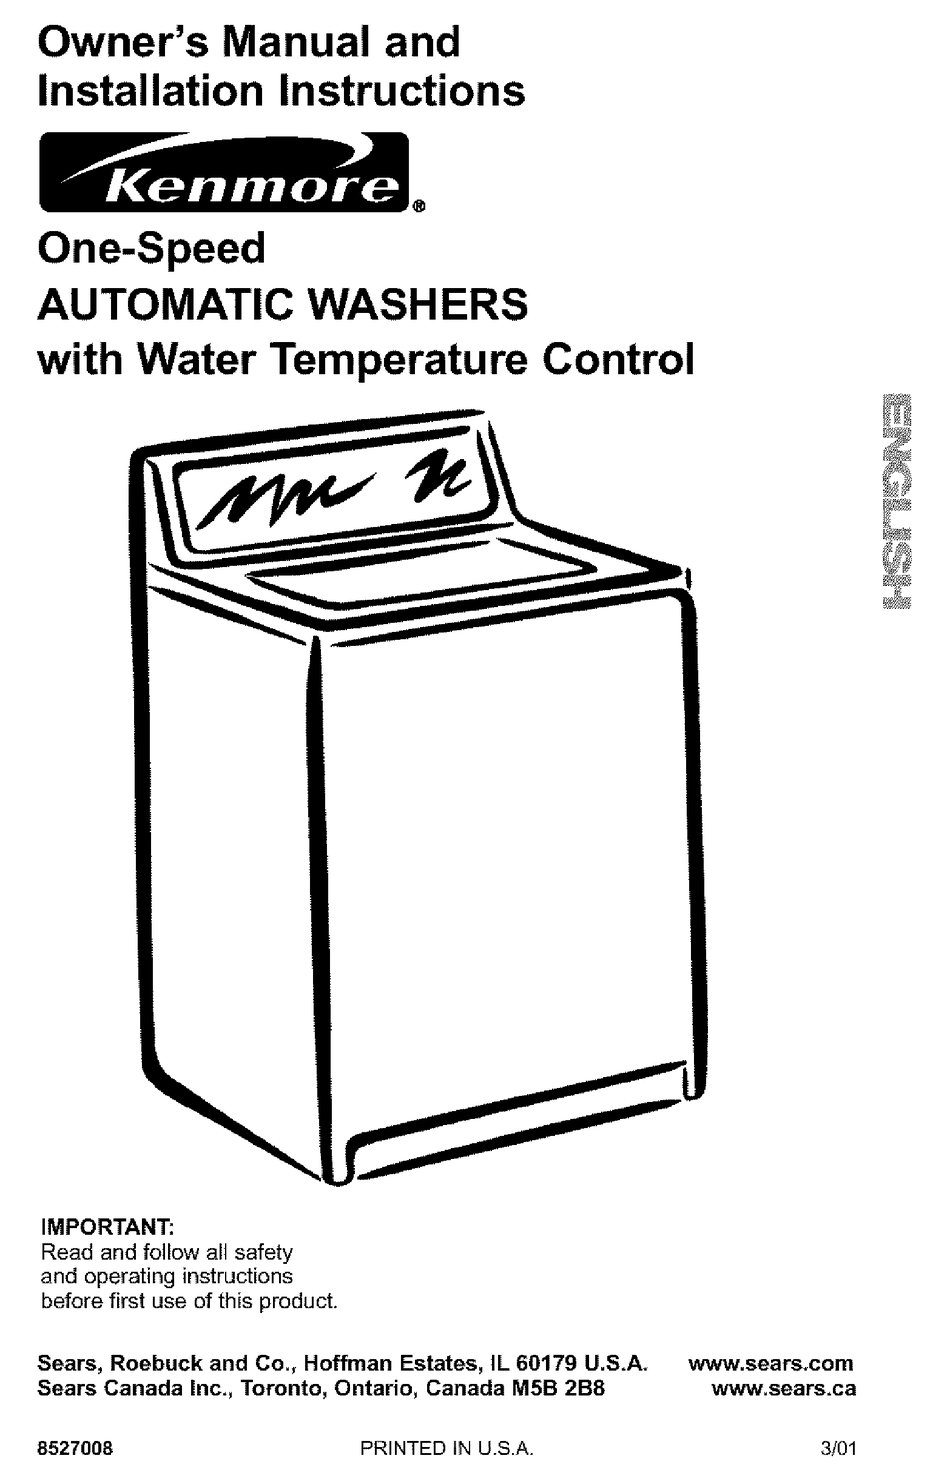 instrukcja rozwiązywania problemów odpowiednia dla pralki kenmore serii 80